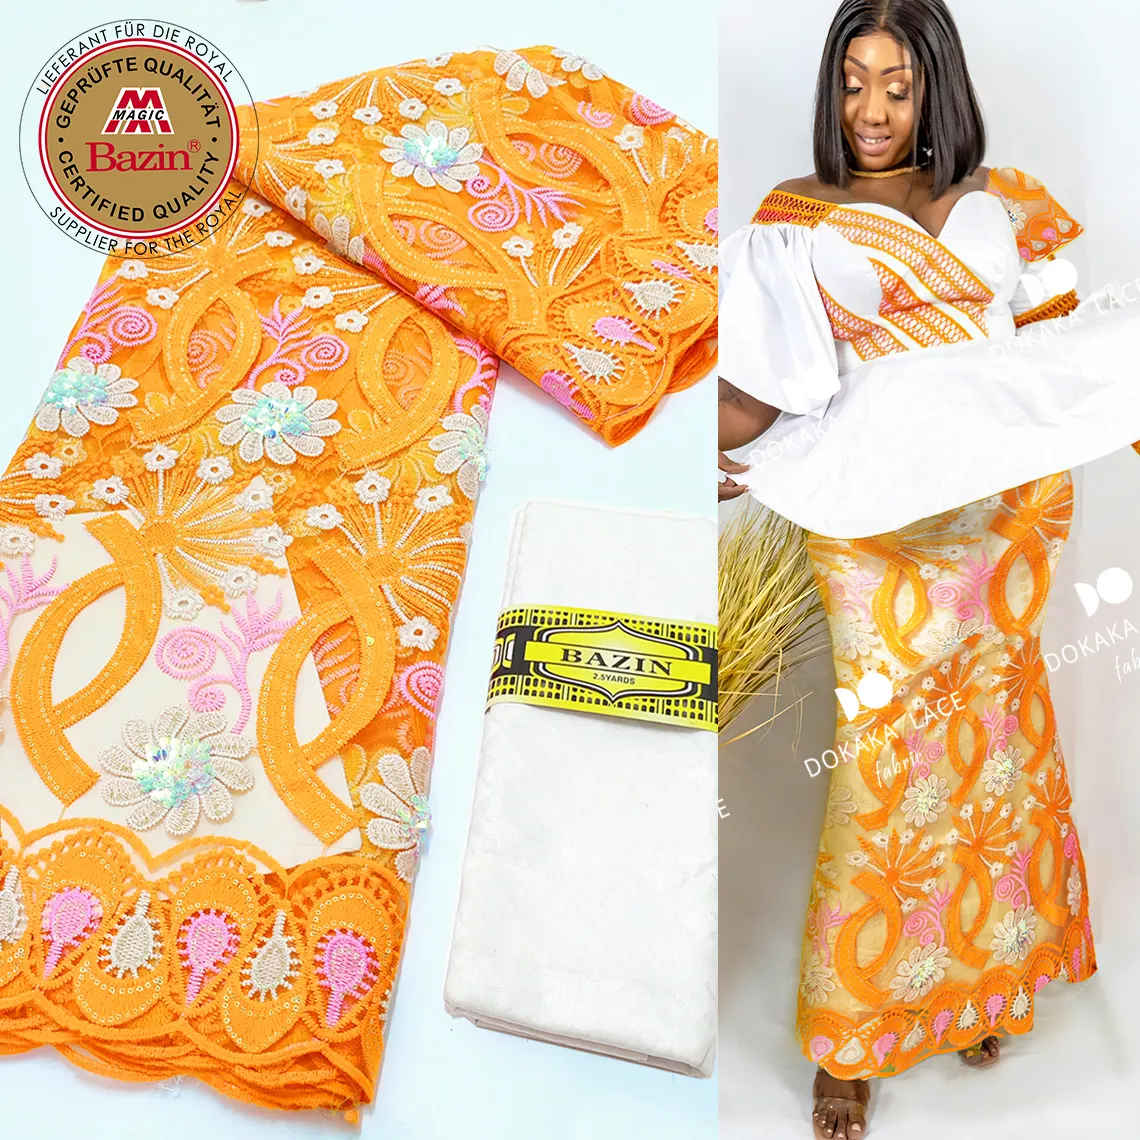 Bazin Riche nijeryalı afrika düğün gelin elbiseler ile turuncu Sequins tül Net dantel dikiş malzemesi payetli örgü havza kumaş